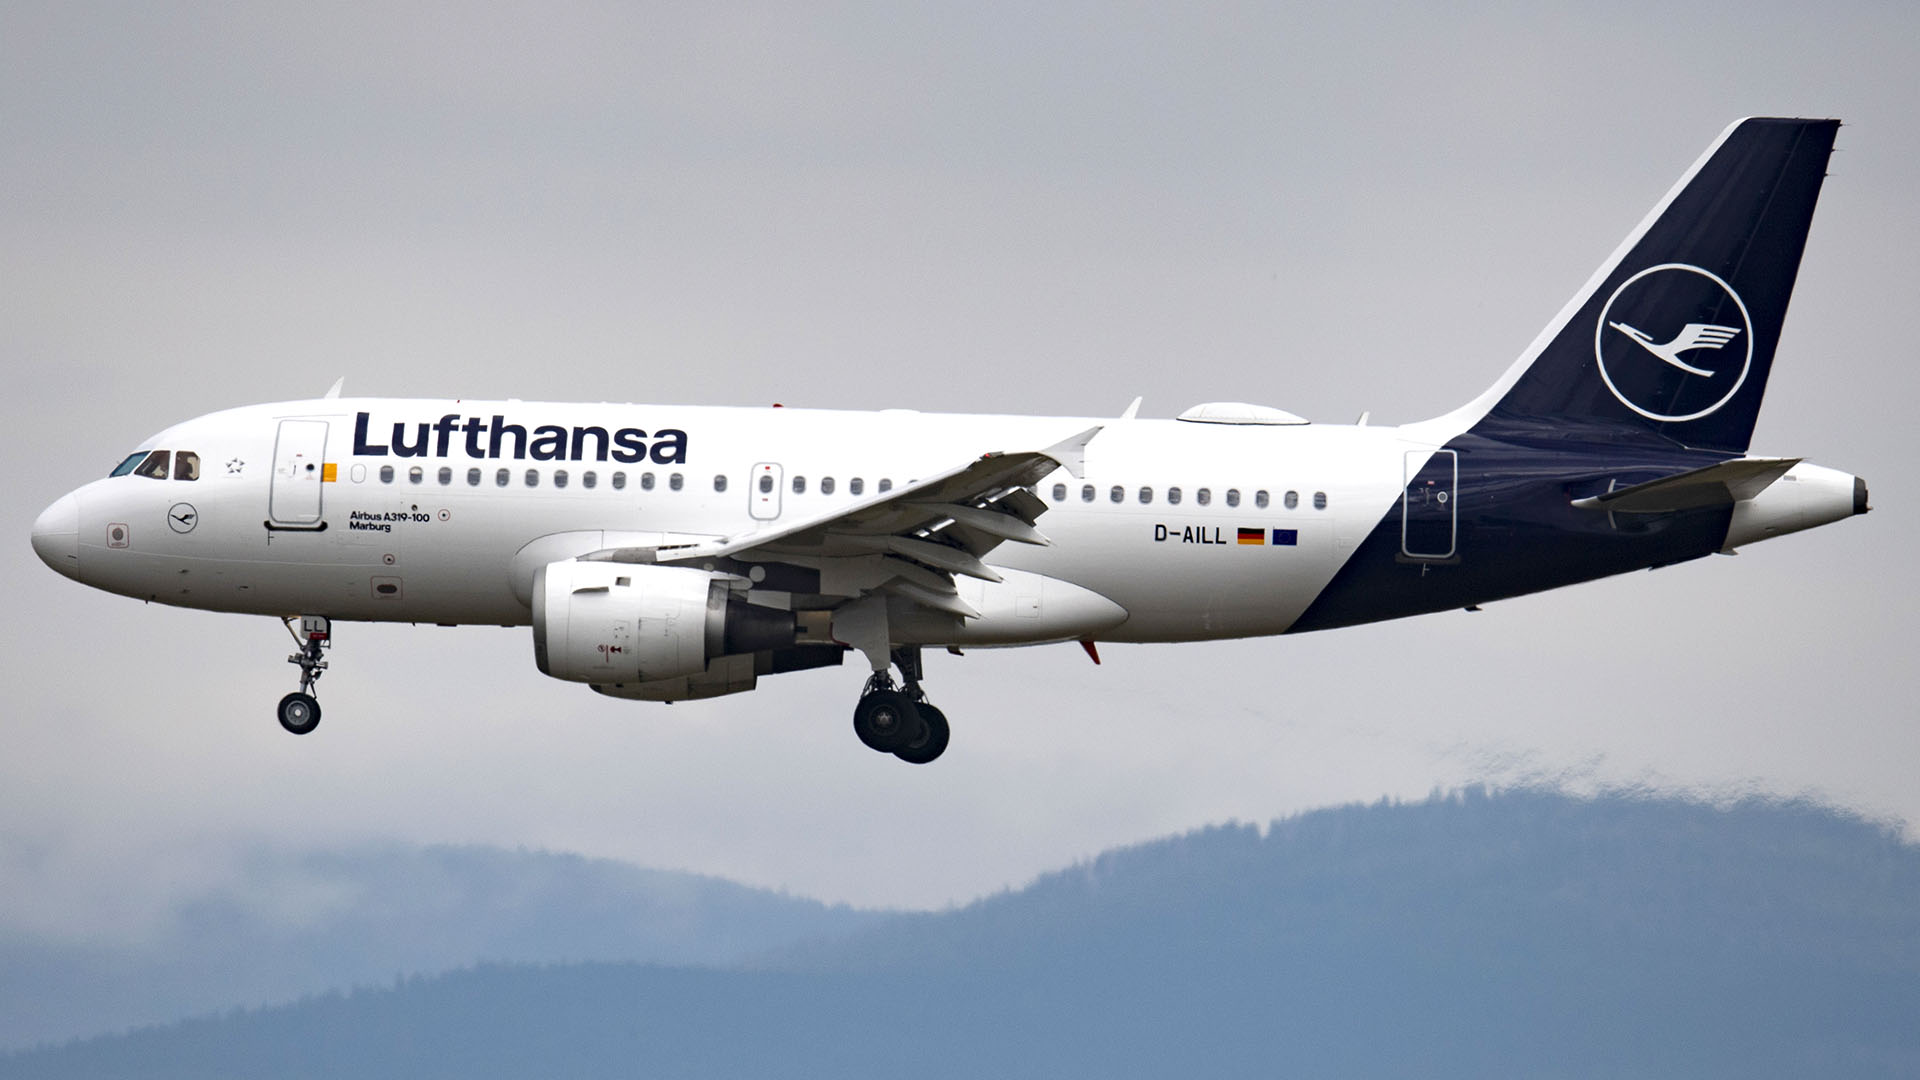 Lufthansa-Maschine des Typs Airbus A319 fliegt  | picture alliance/dpa